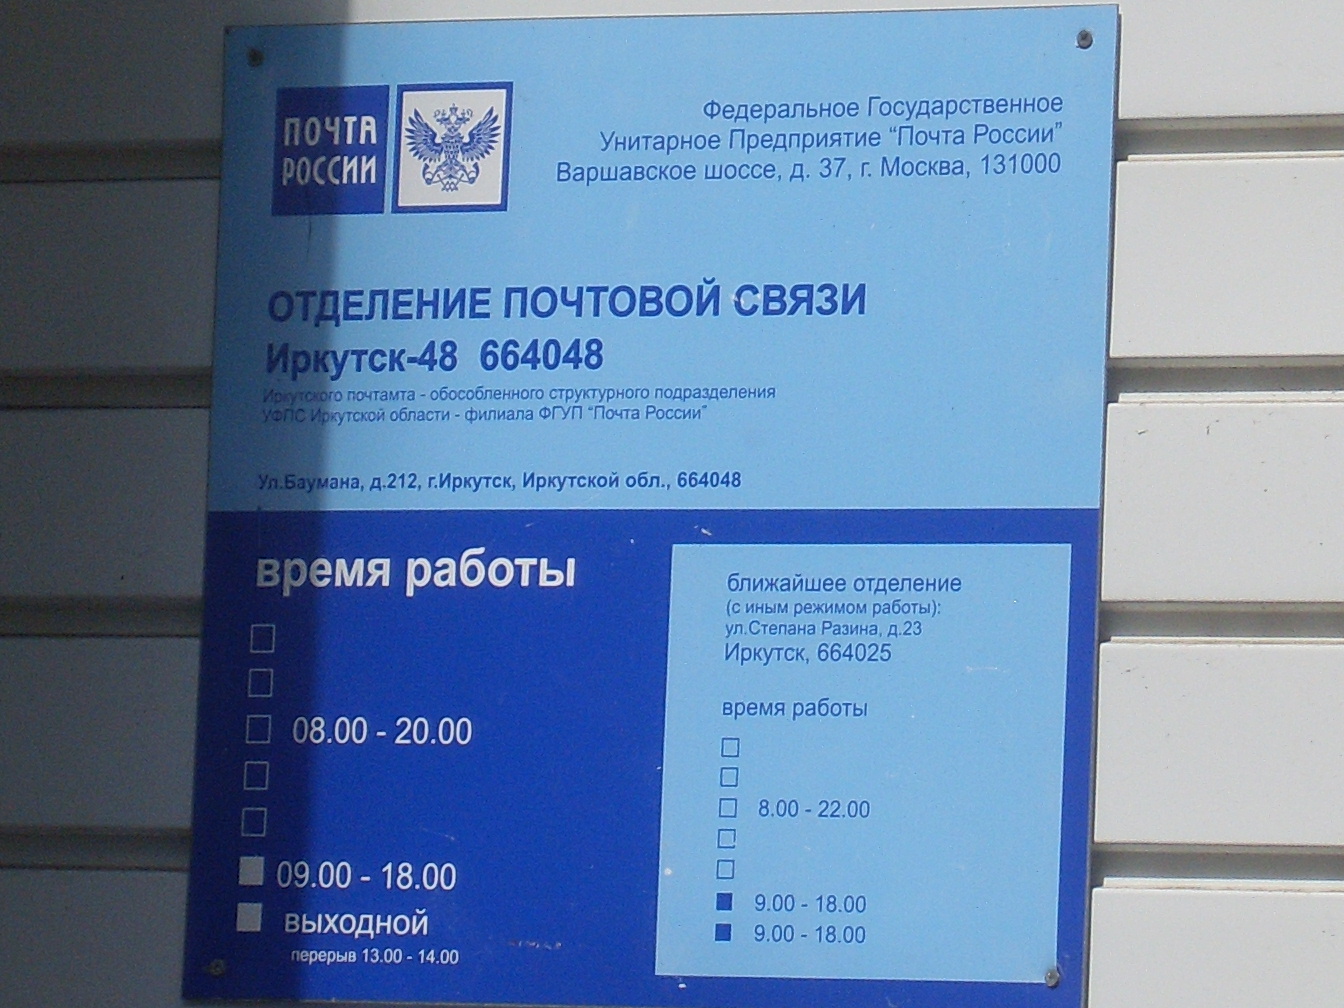 ВХОД, отделение почтовой связи 664048, Иркутская обл., Иркутск